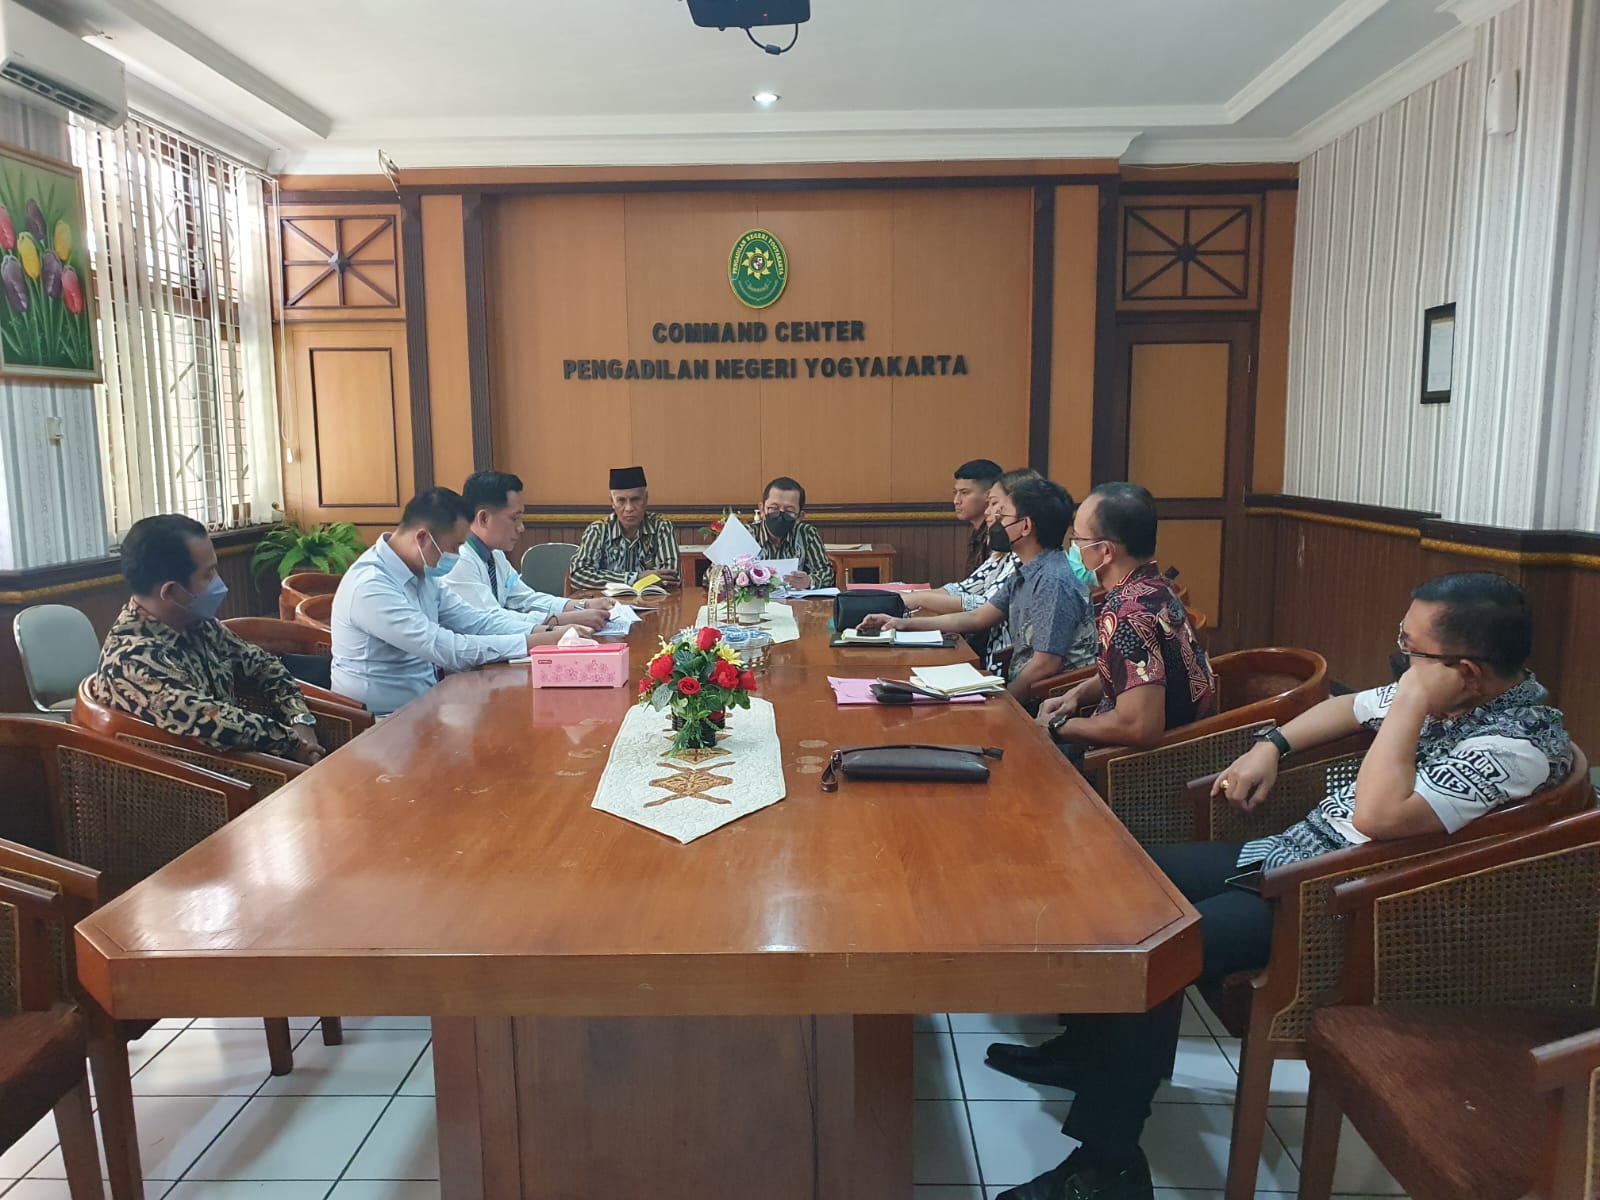 Pengadilan Negeri Yogyakarta Melakukan Kegiatan Teguran/Aanmaning